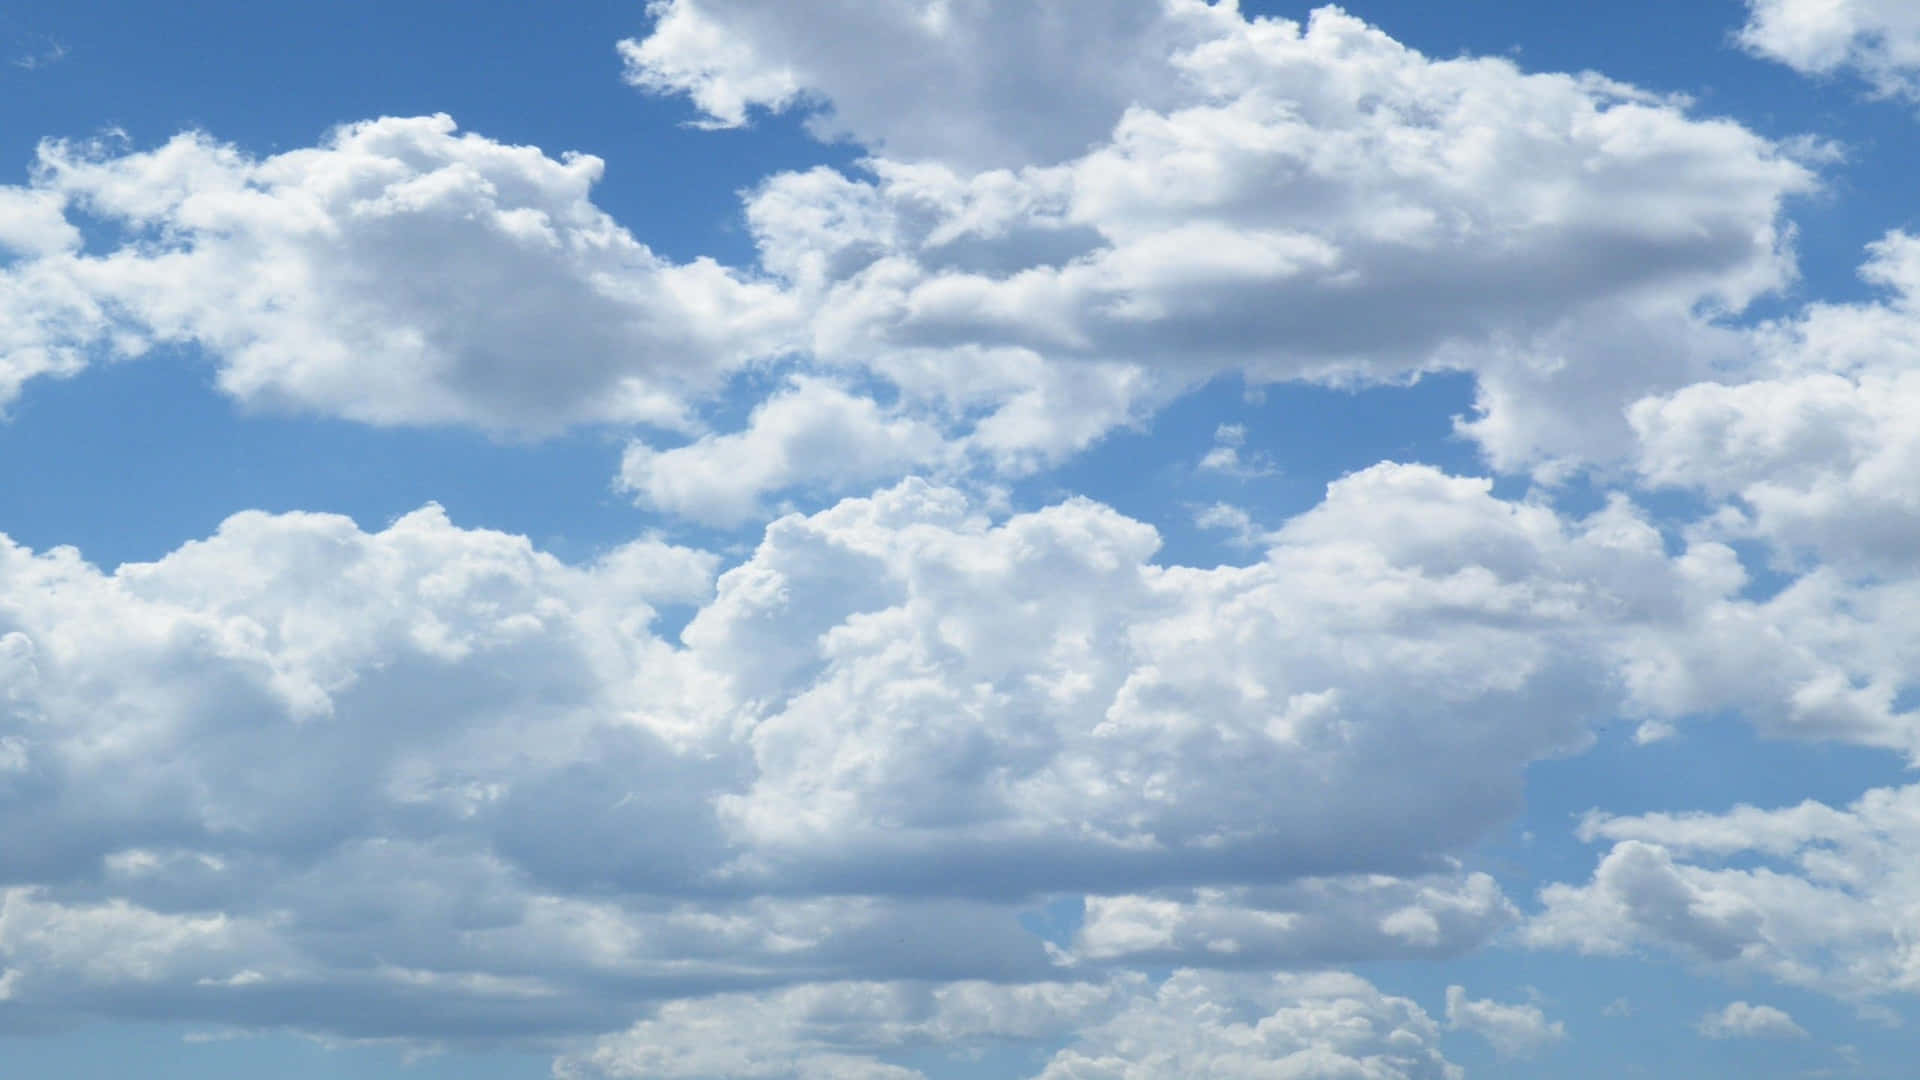 Unavista Cautivadora Del Cielo Azul Y Las Nubes